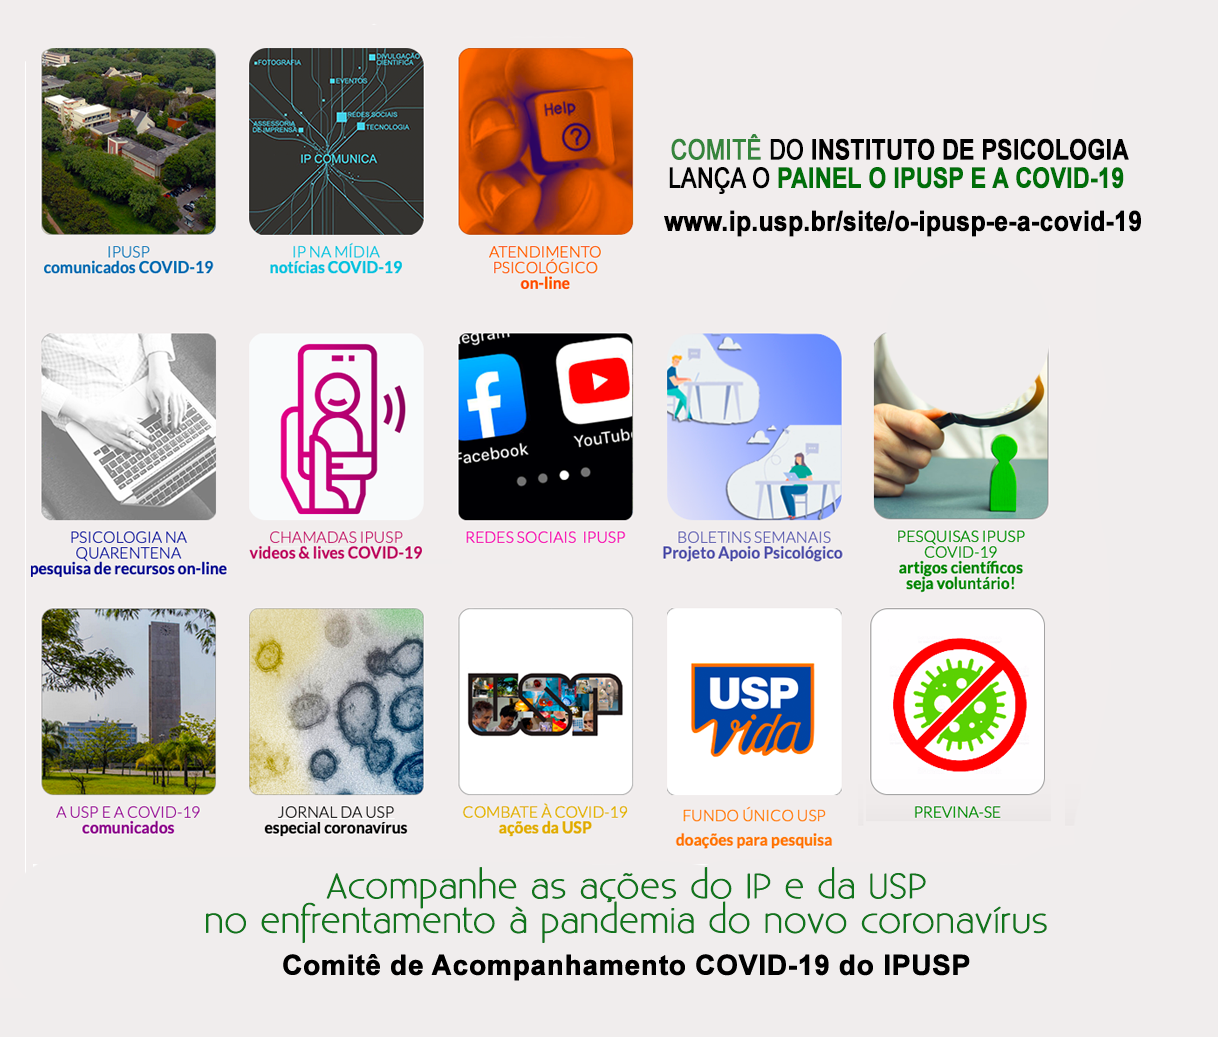 Comitê do Instituto de Psicologia lança o painel “O IPUSP E A COVID-19”